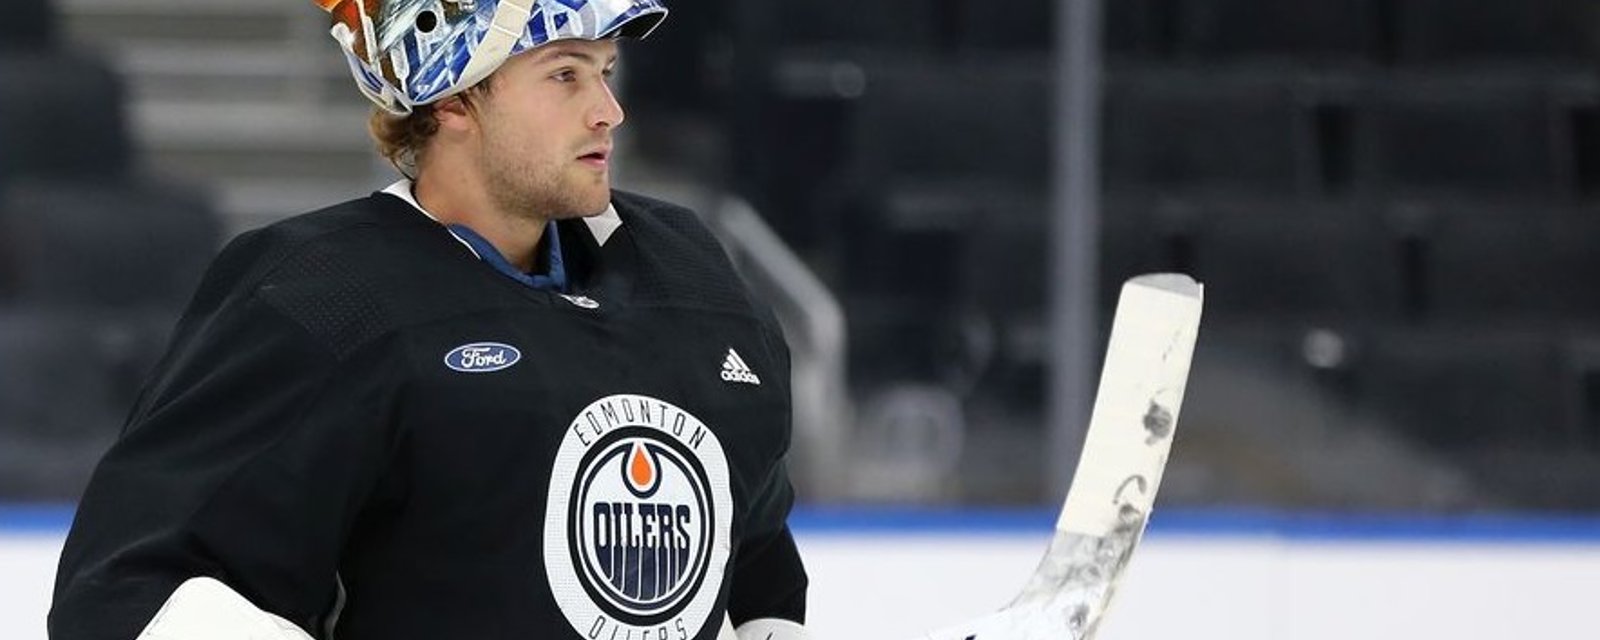 Oilers rookie goaltender Stuart Skinner will make his NHL debut.